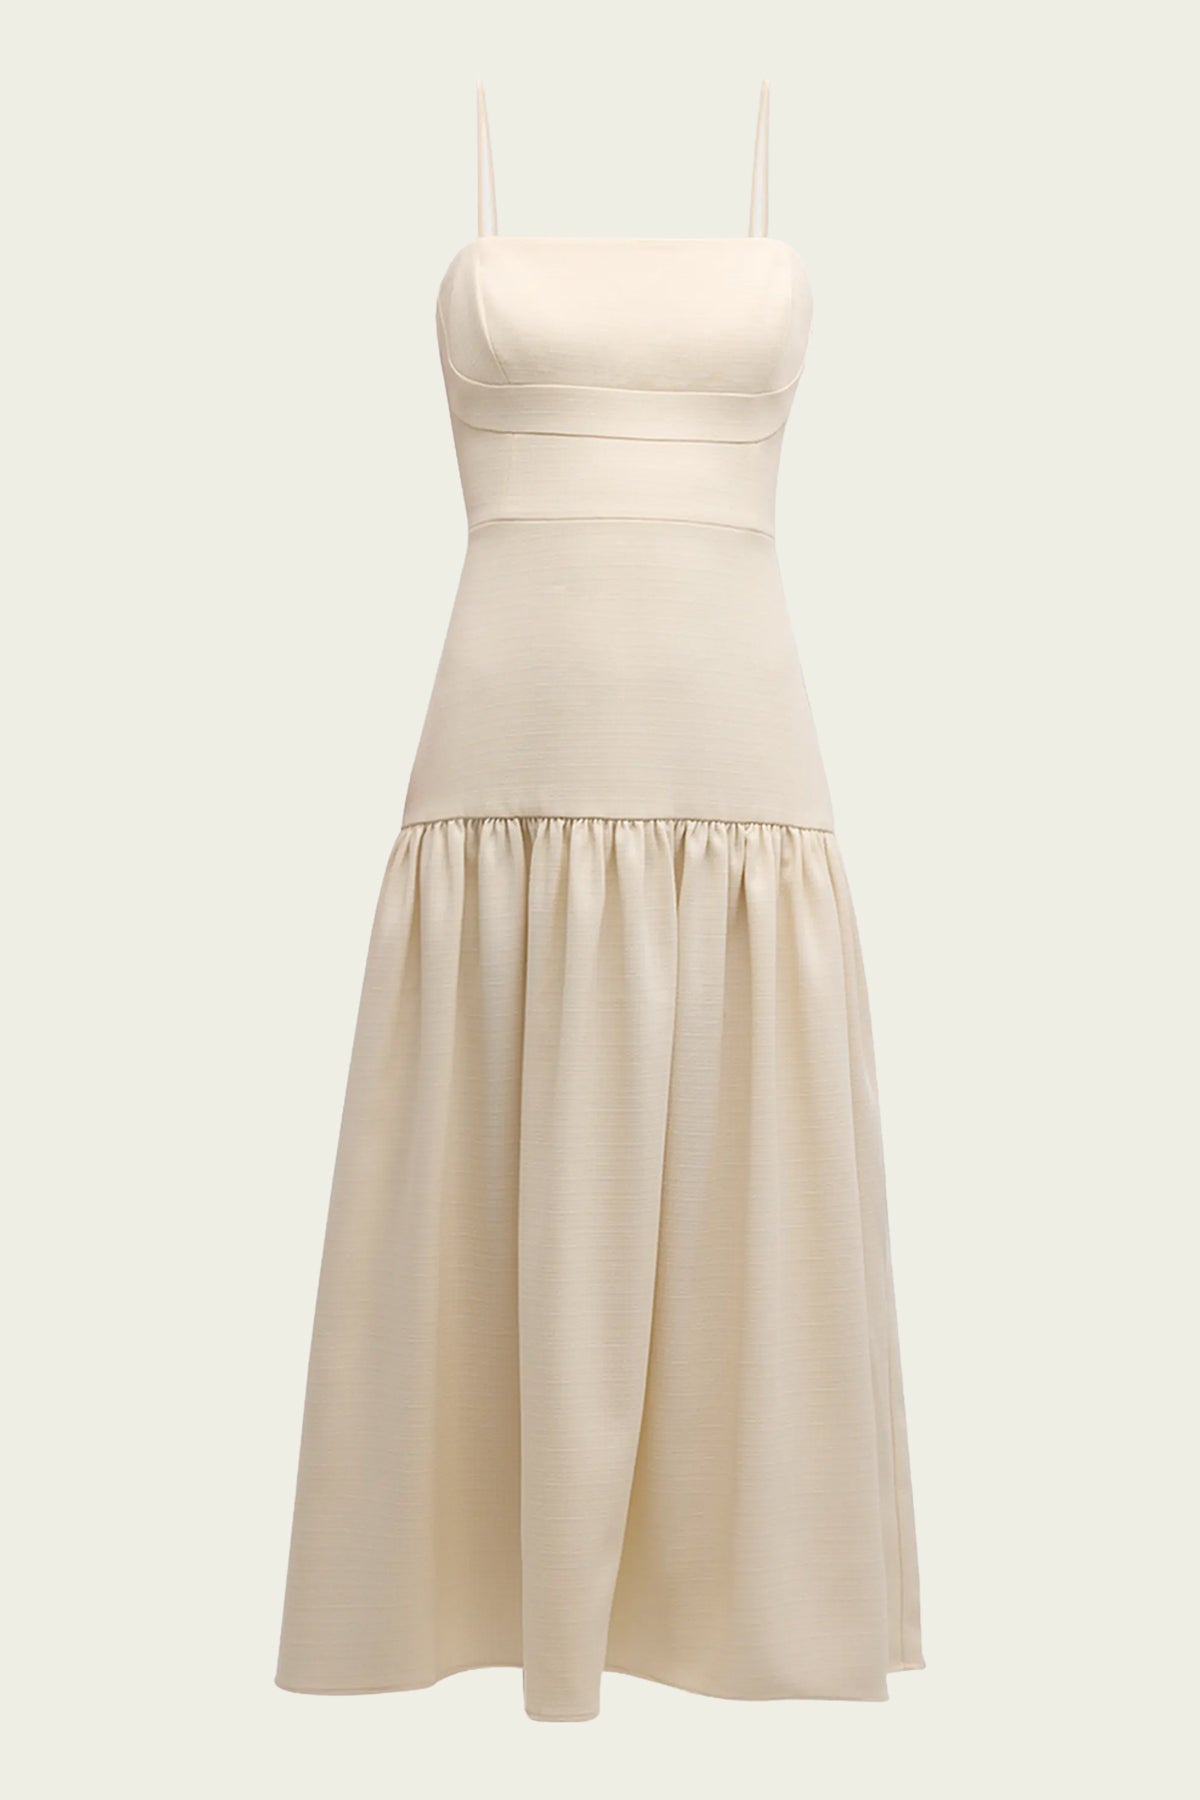 Ivi Dress in Ivory - shop-olivia.com